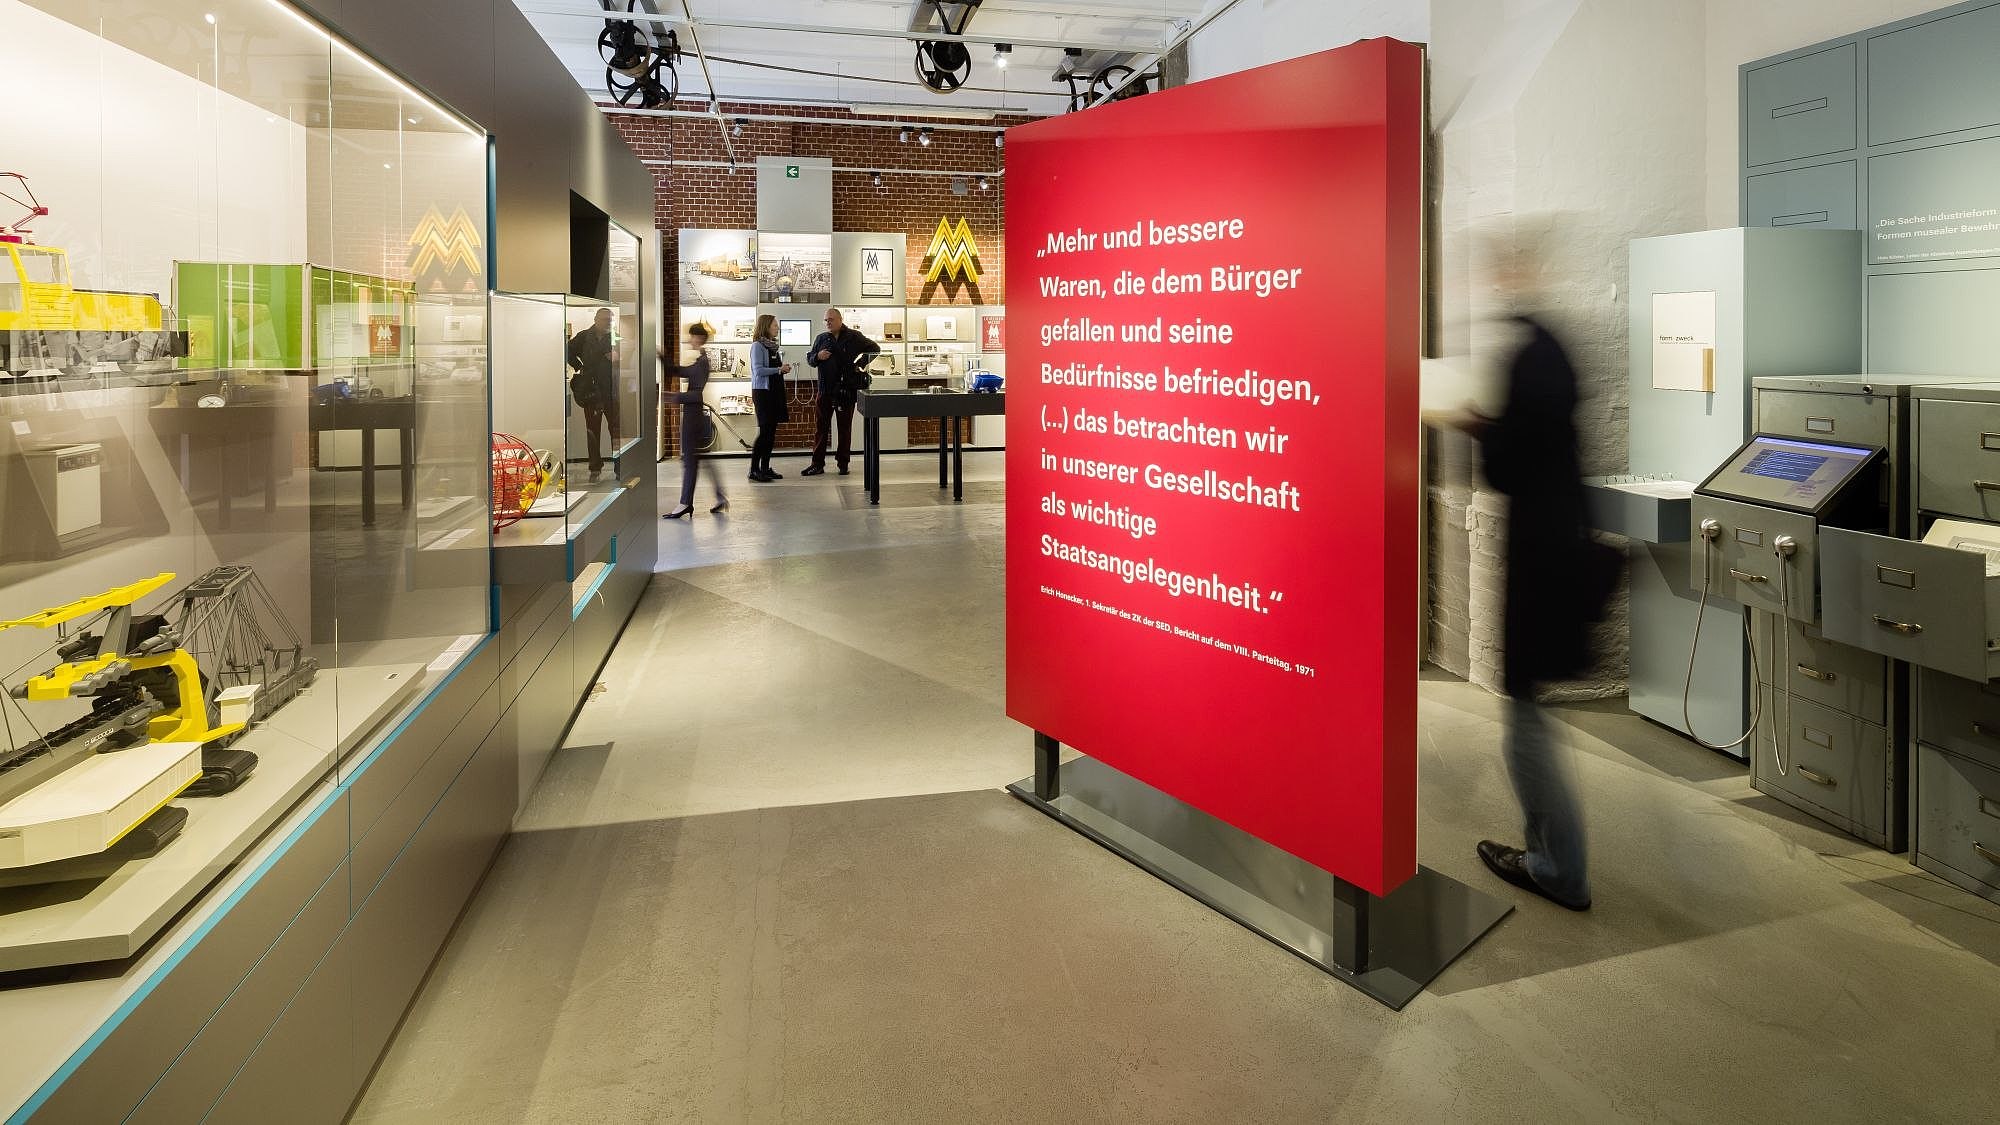 Blick in einen großen Ausstellungsraum, in der Mitte ein großer roter Raumtrenner mit einem Zitat von Erich Honecker, links Modelle von Nutzfahrzeugen in einer Vitrine